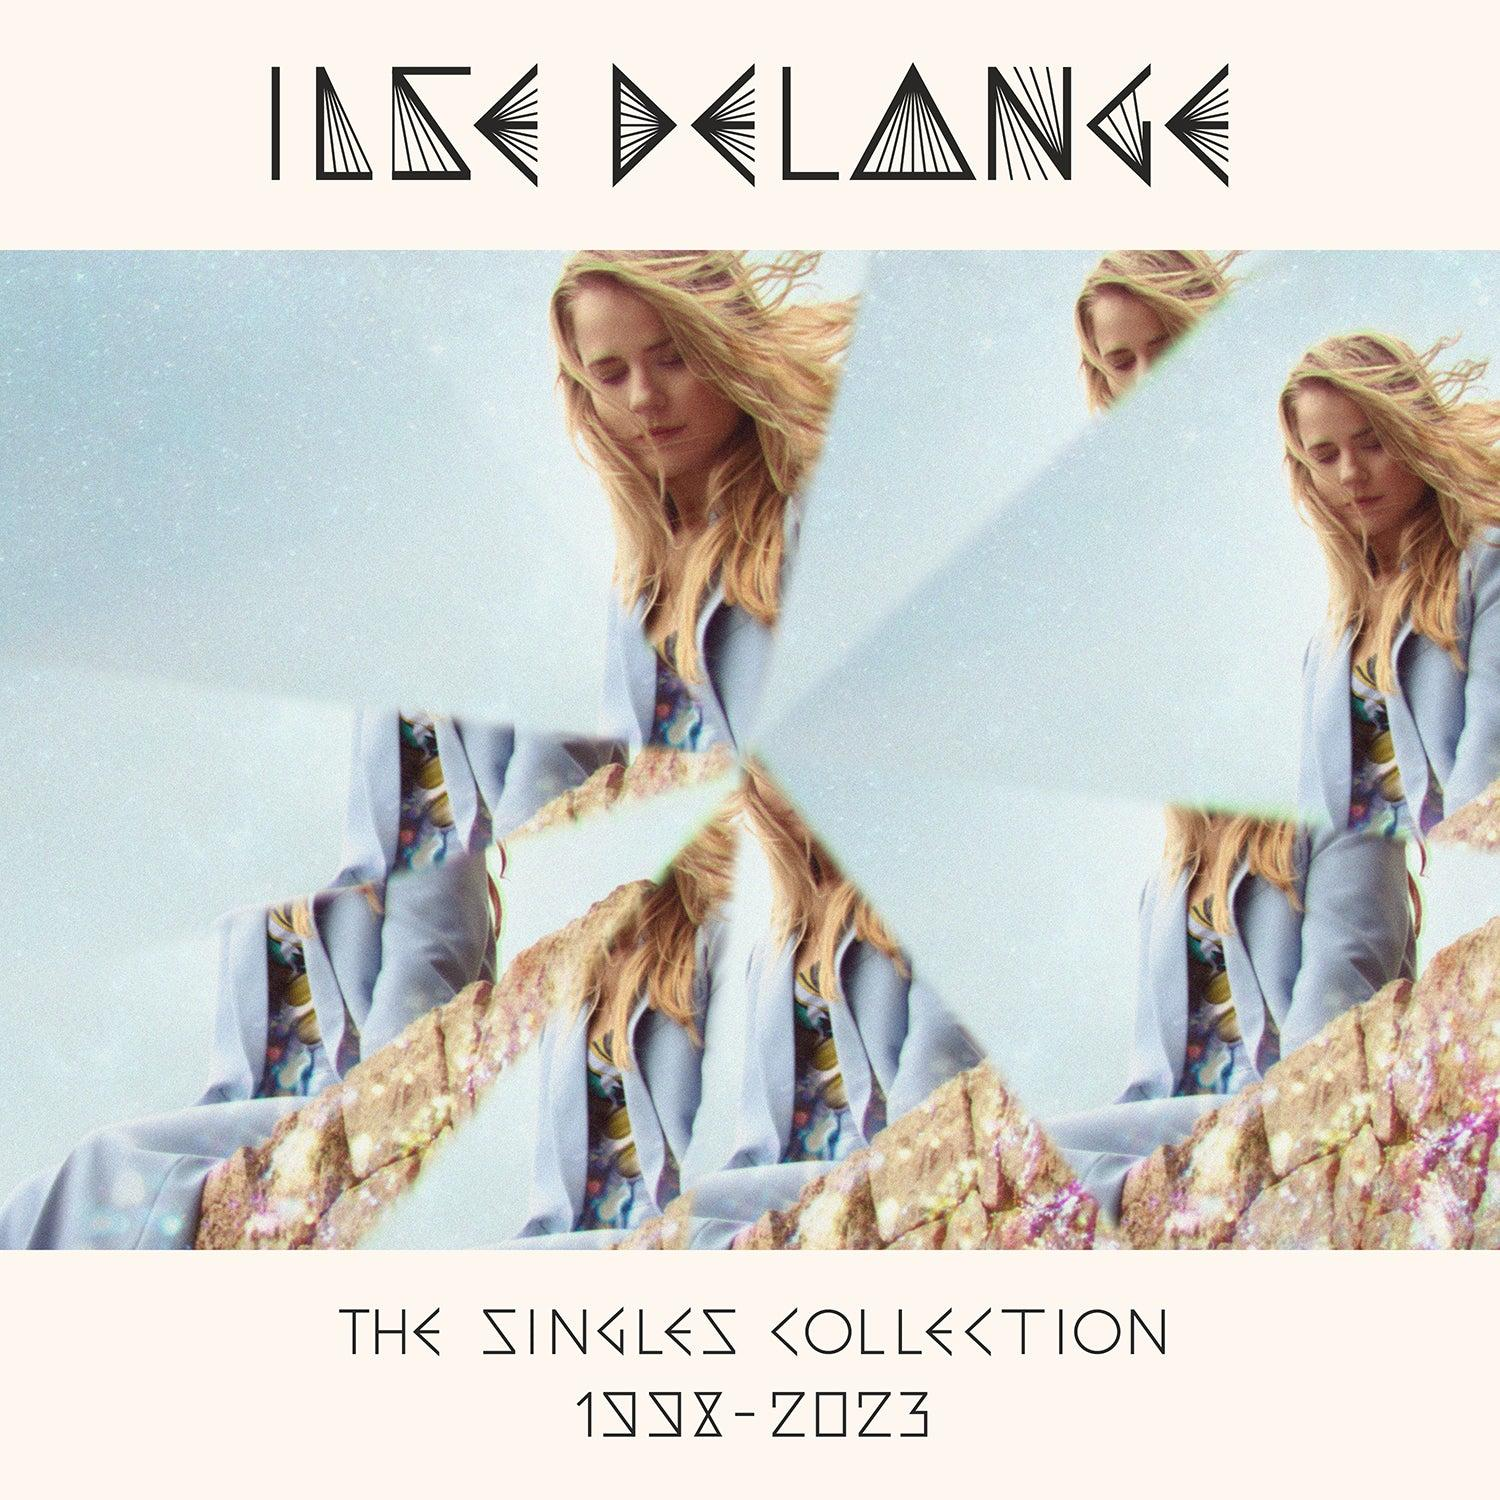 Singles (Vinyl) - Delange 1998-2023 Ilse Collection -